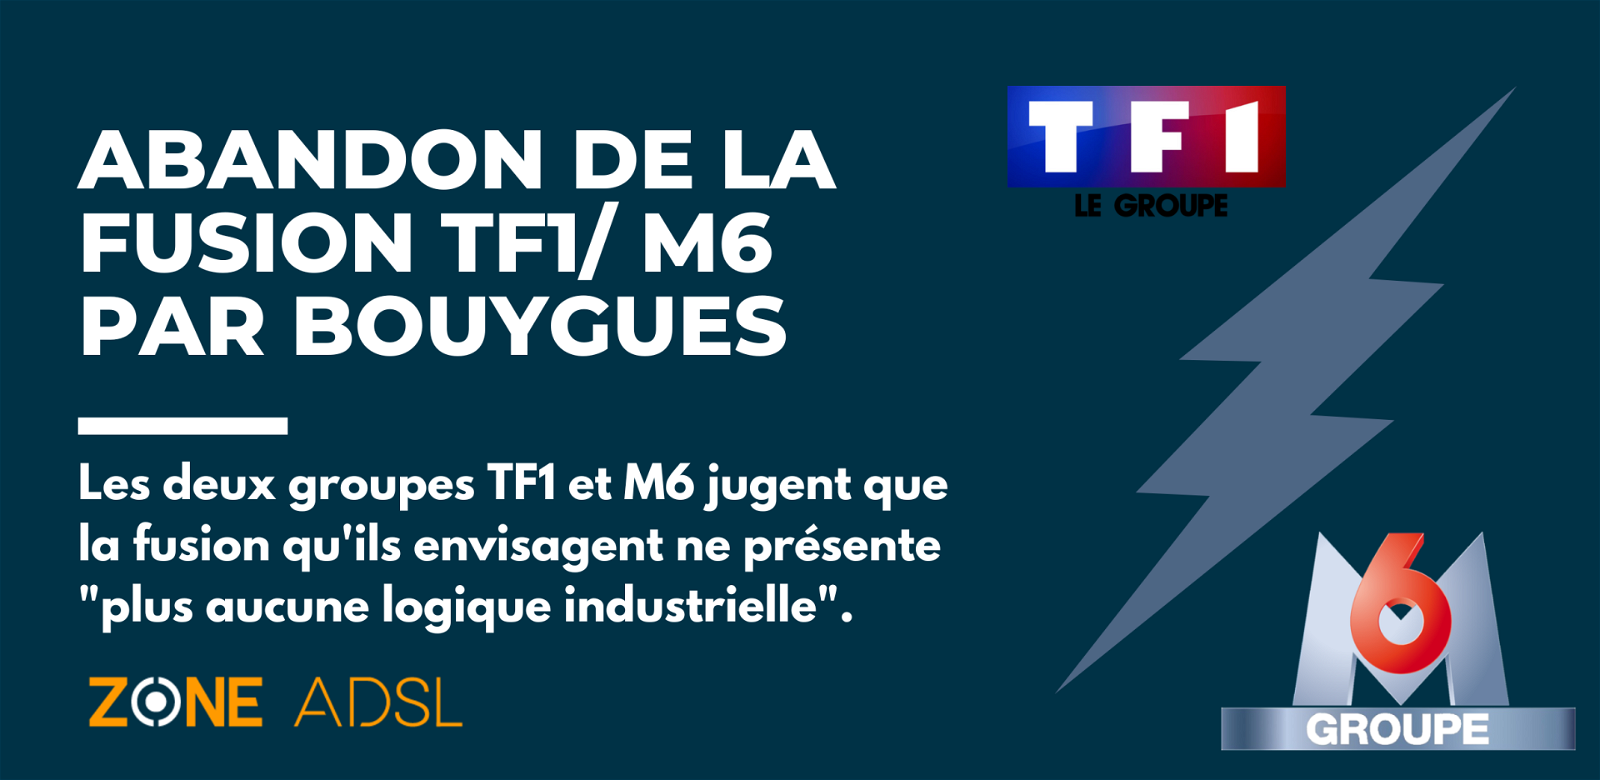 Abandon de la fusion TF1/M6 par Bouygues